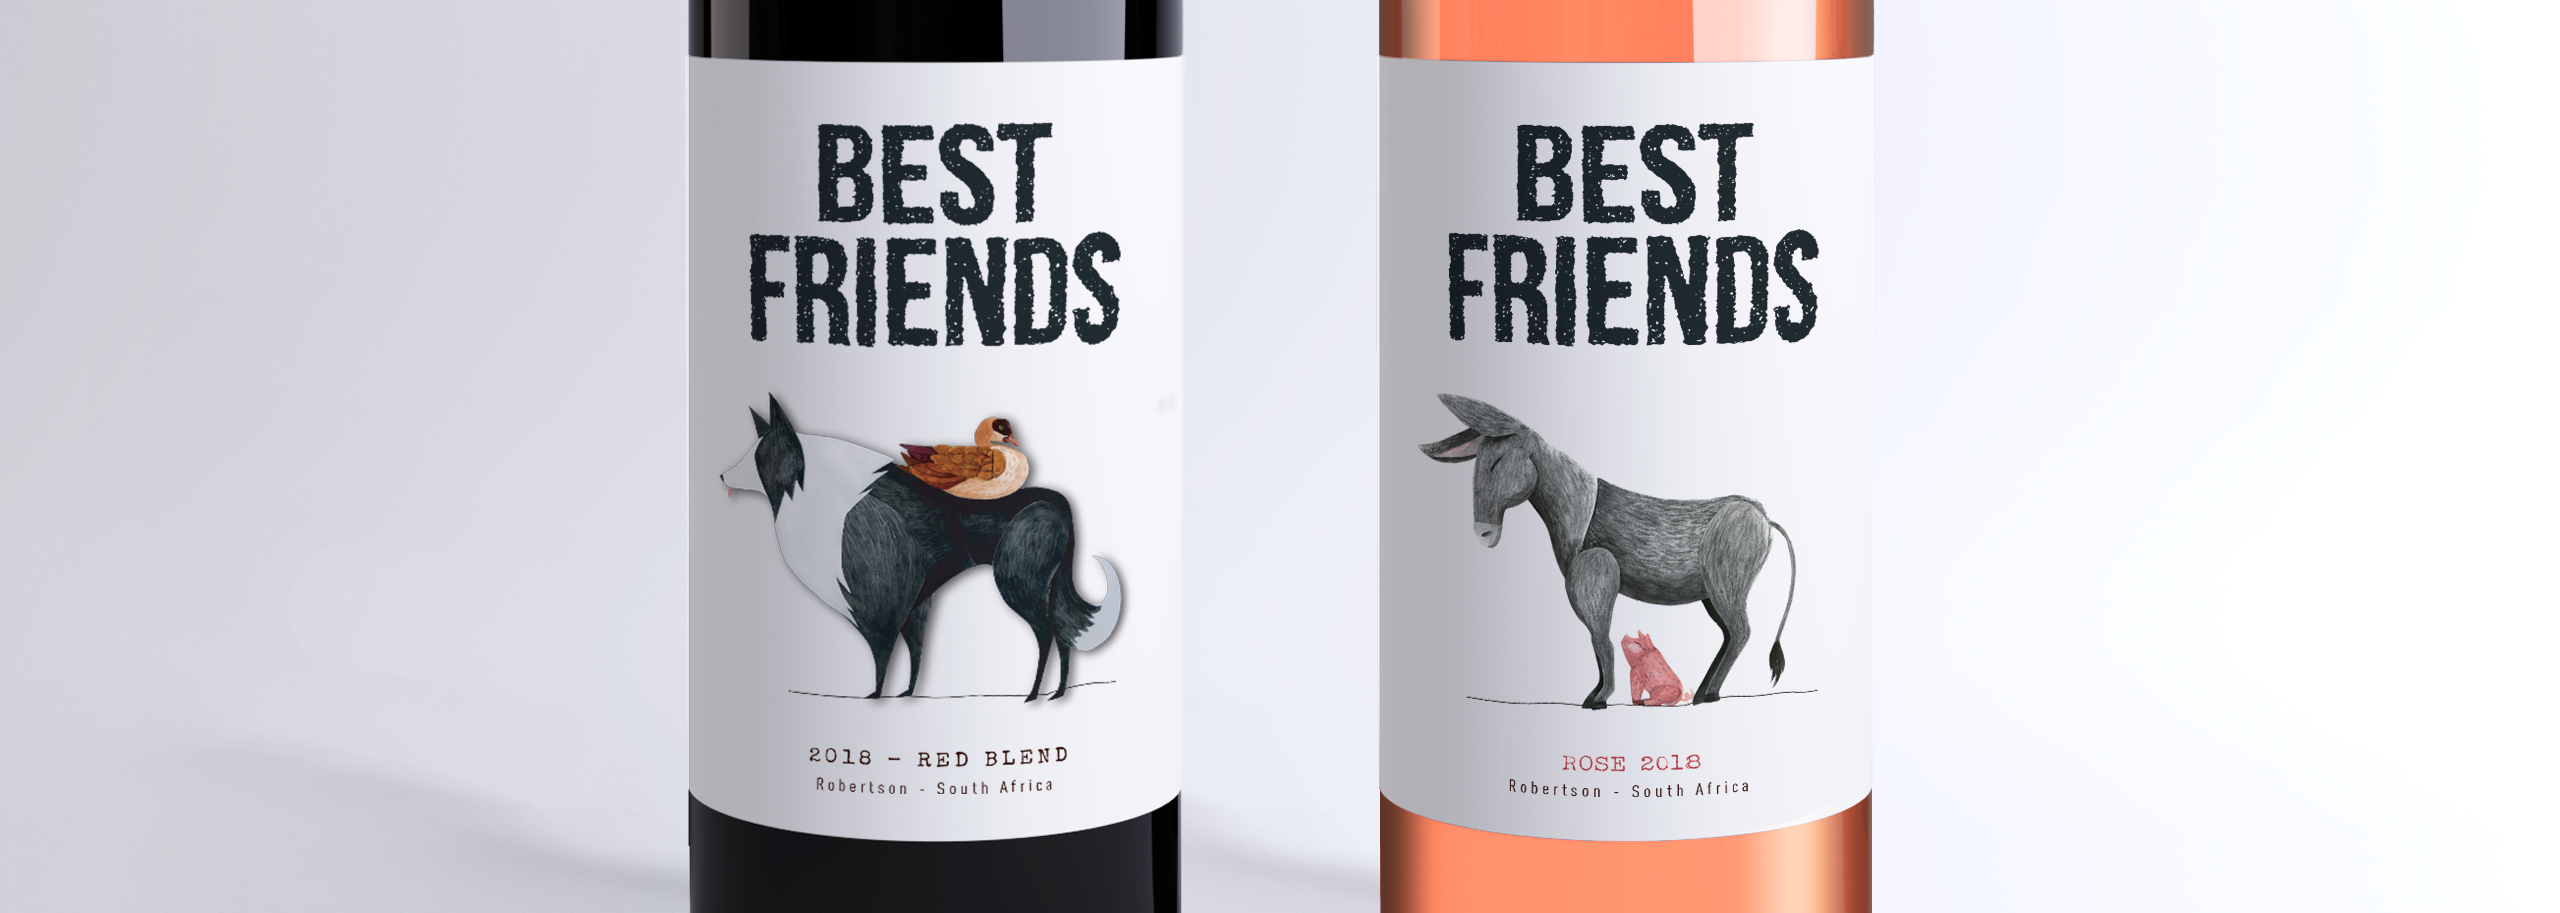 Best Friends - Zandvliet Wine Label-1